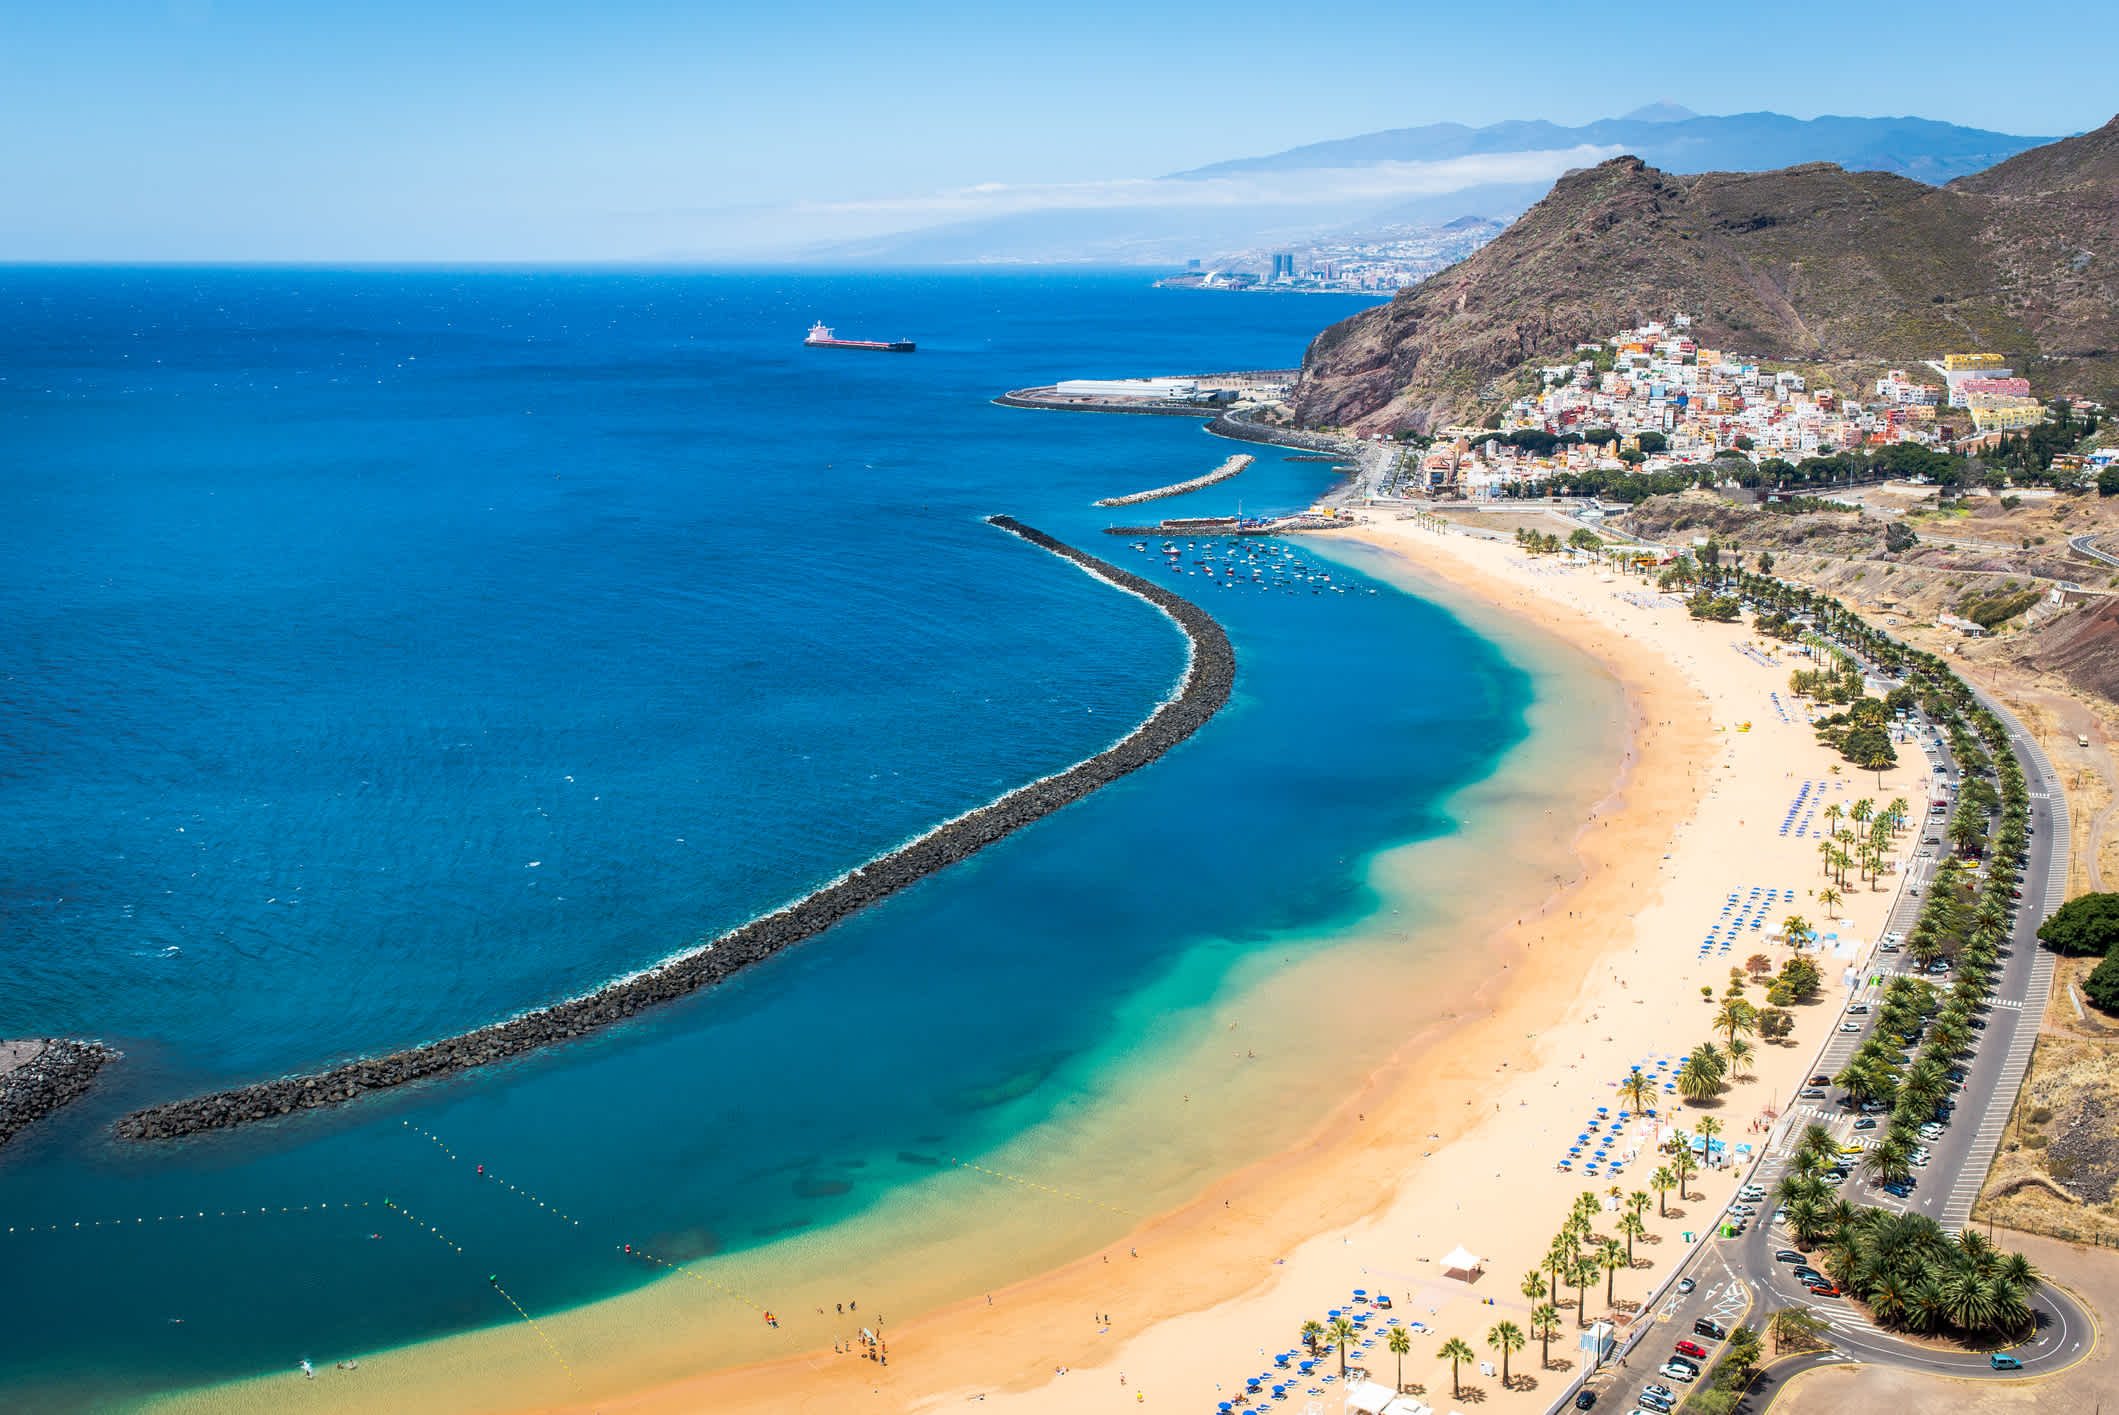 Playa de Las Teresitas à Tenerife aux Canaries, en Espagne